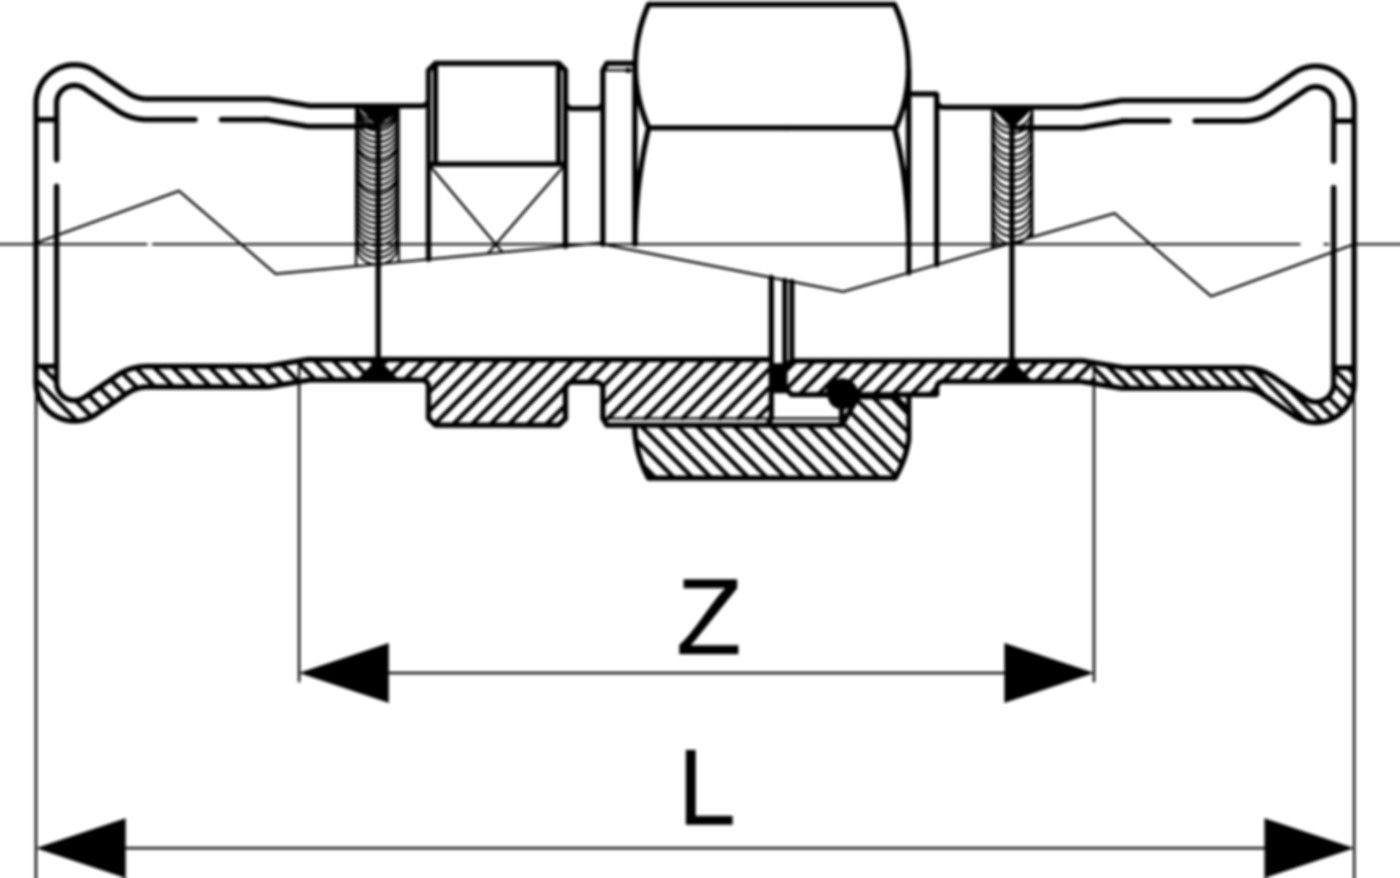 Doppelanschlussverschraubung fld. S66QD 18 mm, mit Überwurfmutter Messing - Eurotubi Press-Formstücke Sanitär